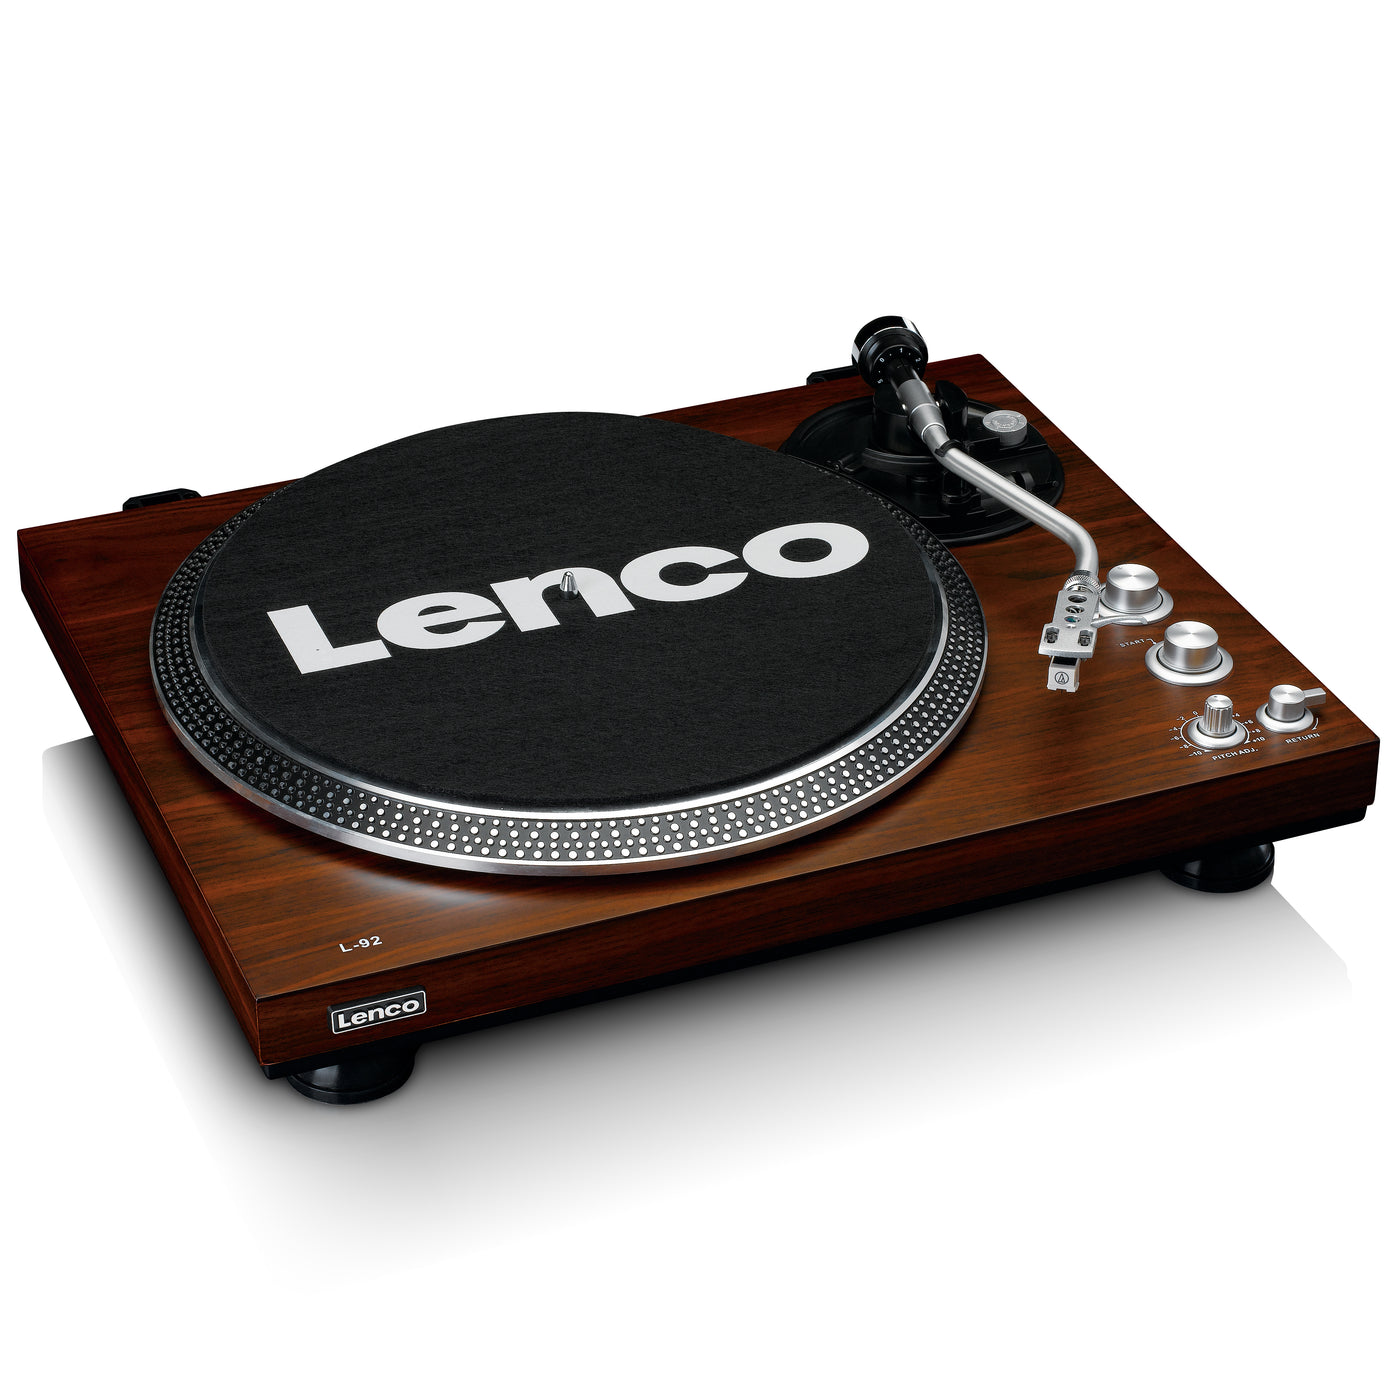 LENCO L-92WA - Gramofon z napędem paskowym MMC, A/R, PC USB - Orzech